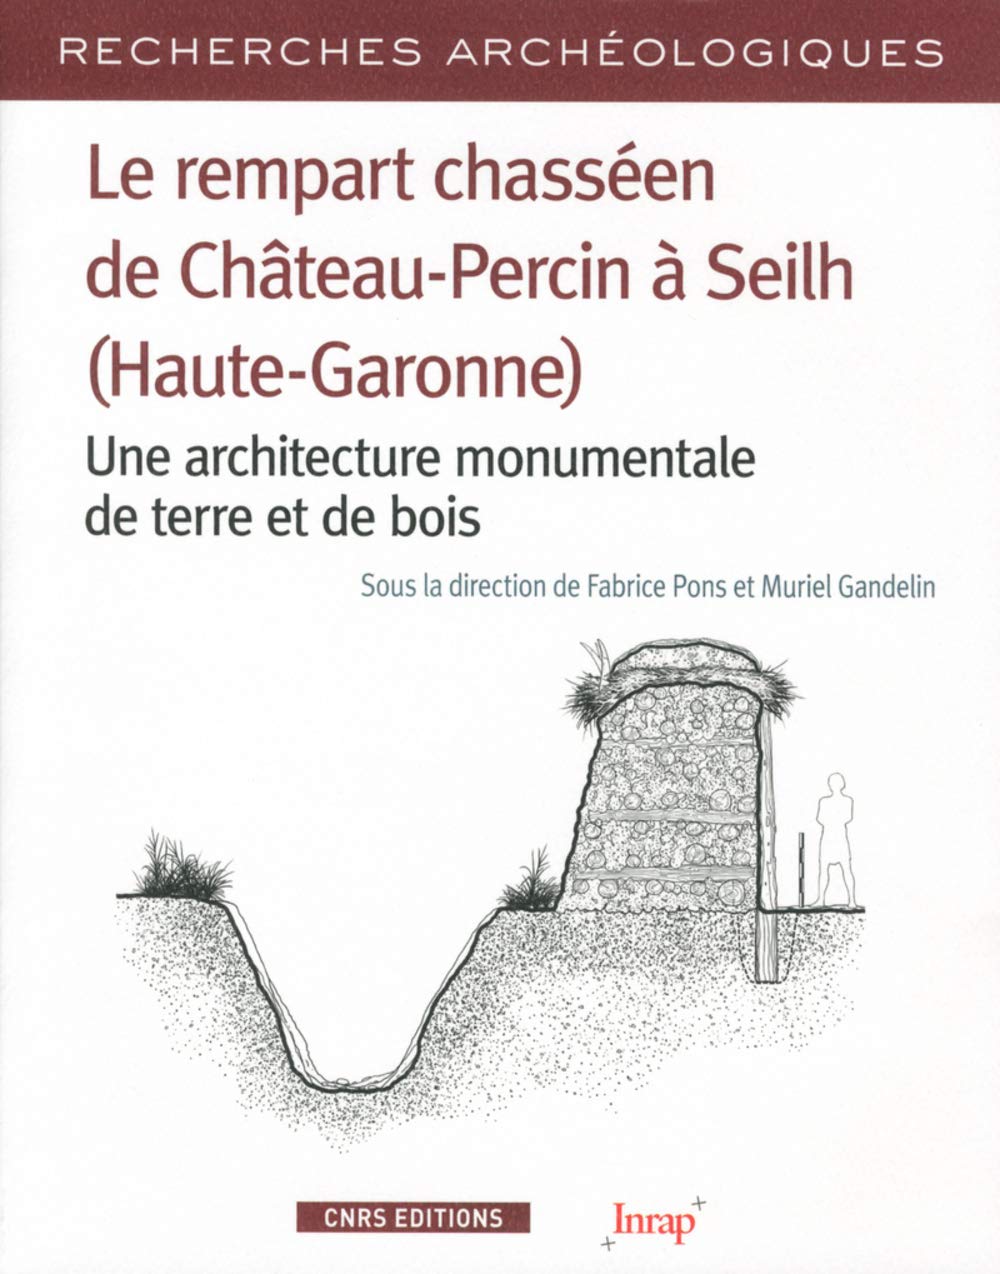 Le rempart chasséen de Château-Percin à Seilh (Haute-Garonne). Une architecture monumentale de terre et de bois, 2018, 314 p.